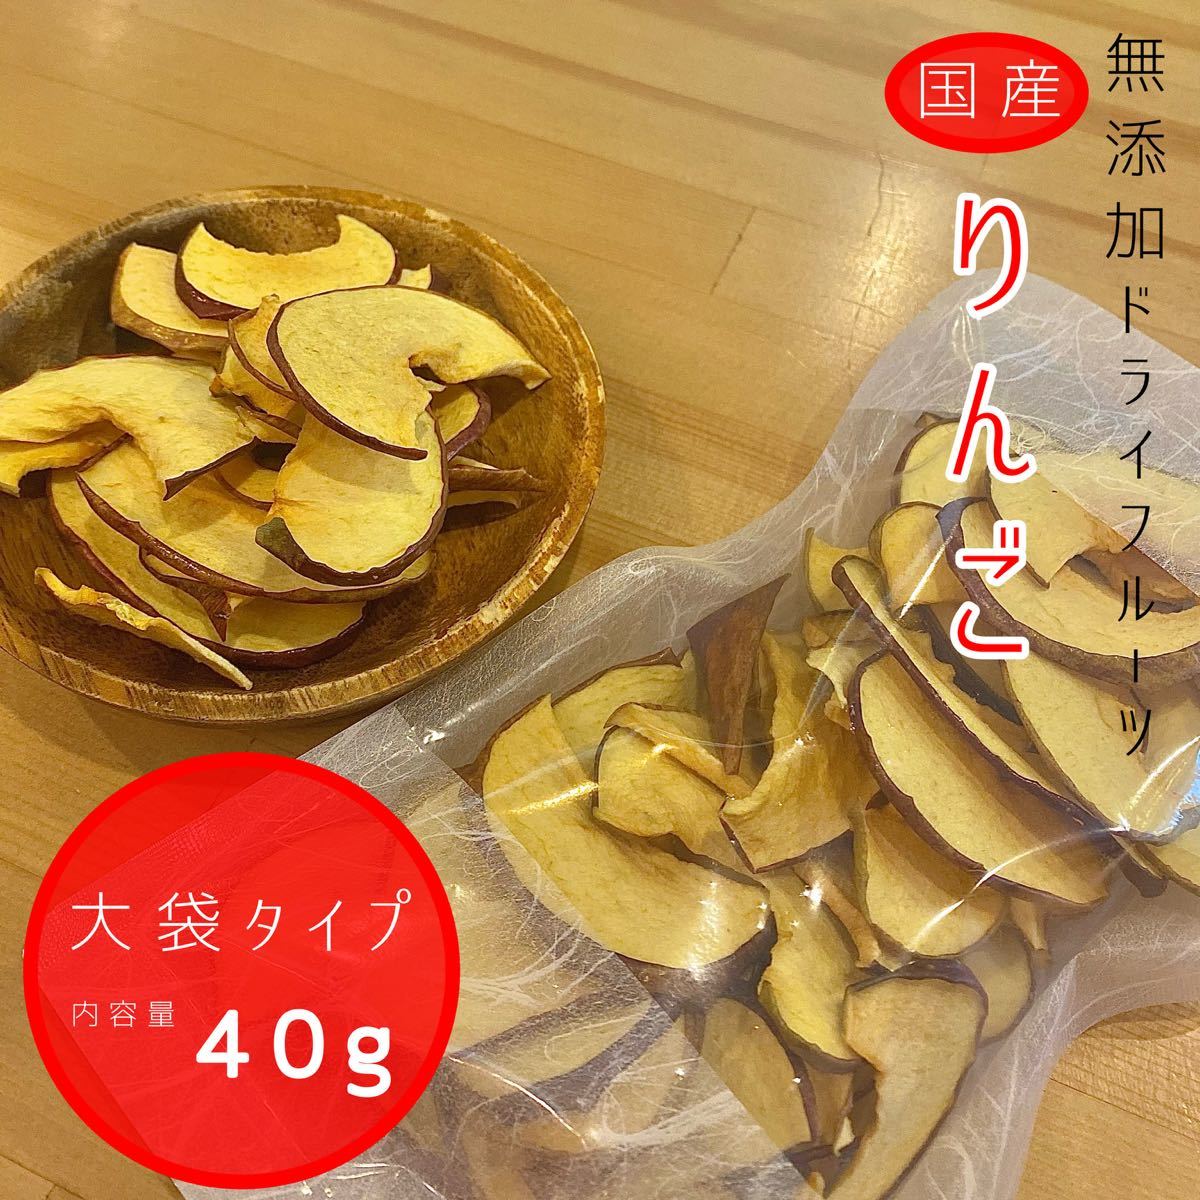 【3袋】青森県産りんごチップス サンふじ 120g 無添加 ドライフルーツ ドライリンゴ リンゴチップス 砂糖不使用 ギフトなどにの画像3